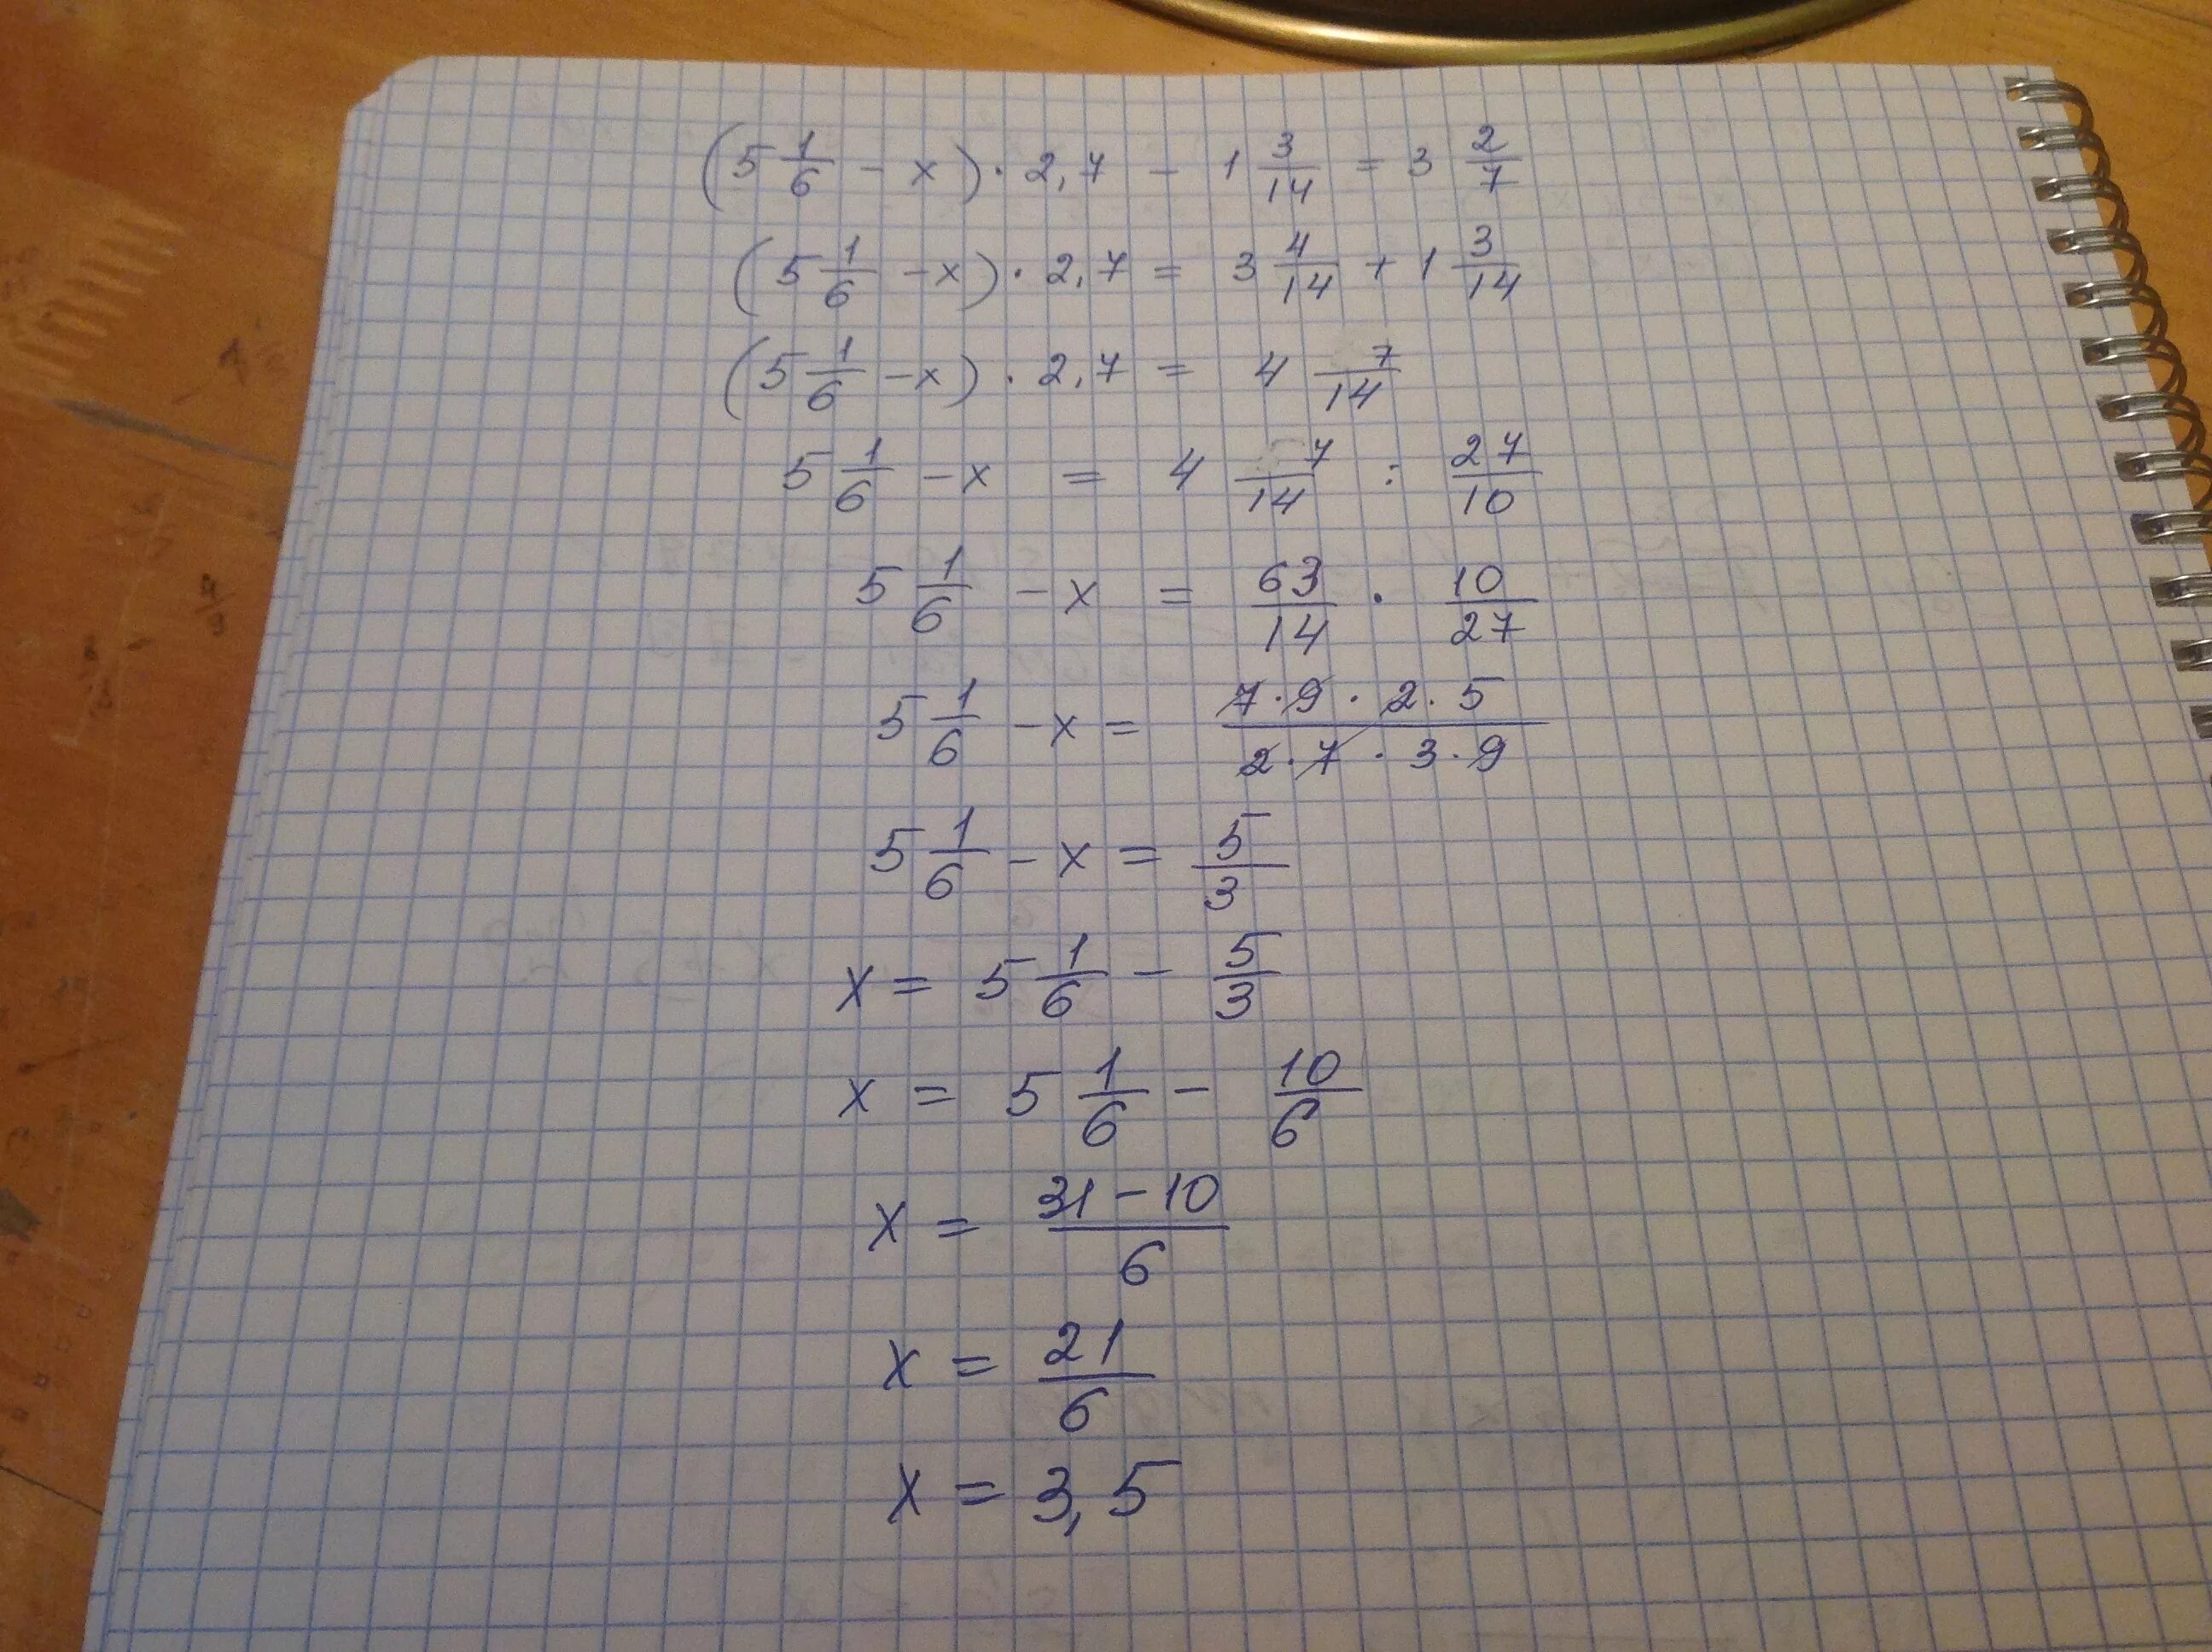 2/X-3=7/X+1. X-2/3=3x+1/7. 3,5/√1-X=1 1/6. 5-2(1-Х)=7x+6.